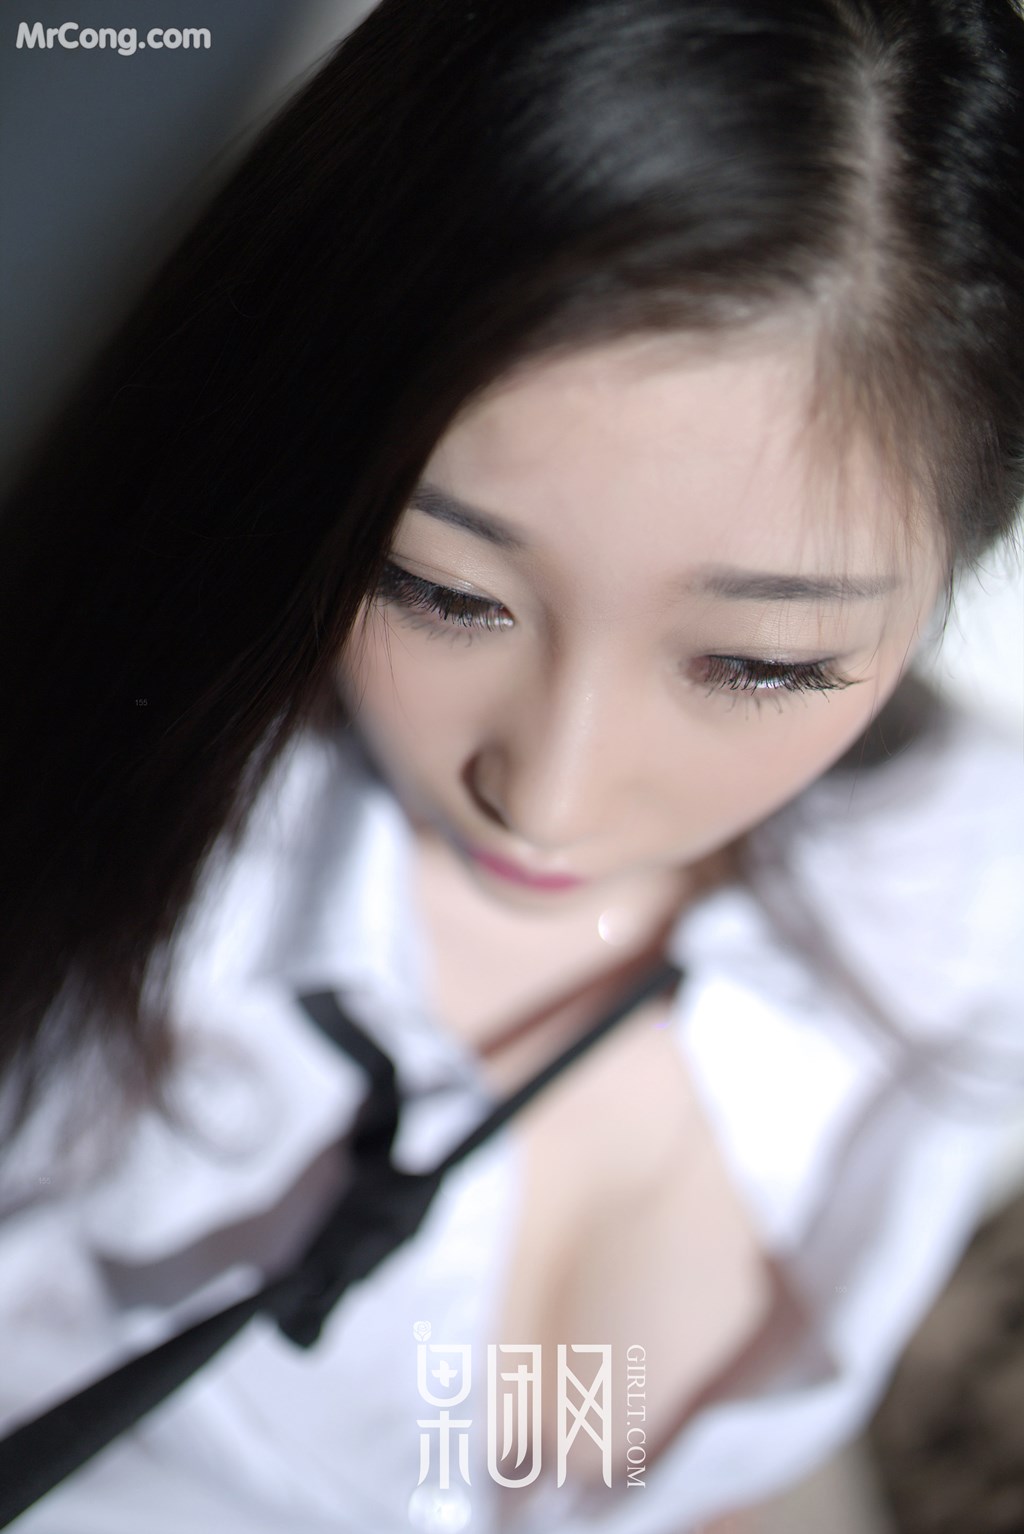 GIRLT No.082: Model Daji_Toxic (妲 己 _Toxic) (46 photos) photo 1-7